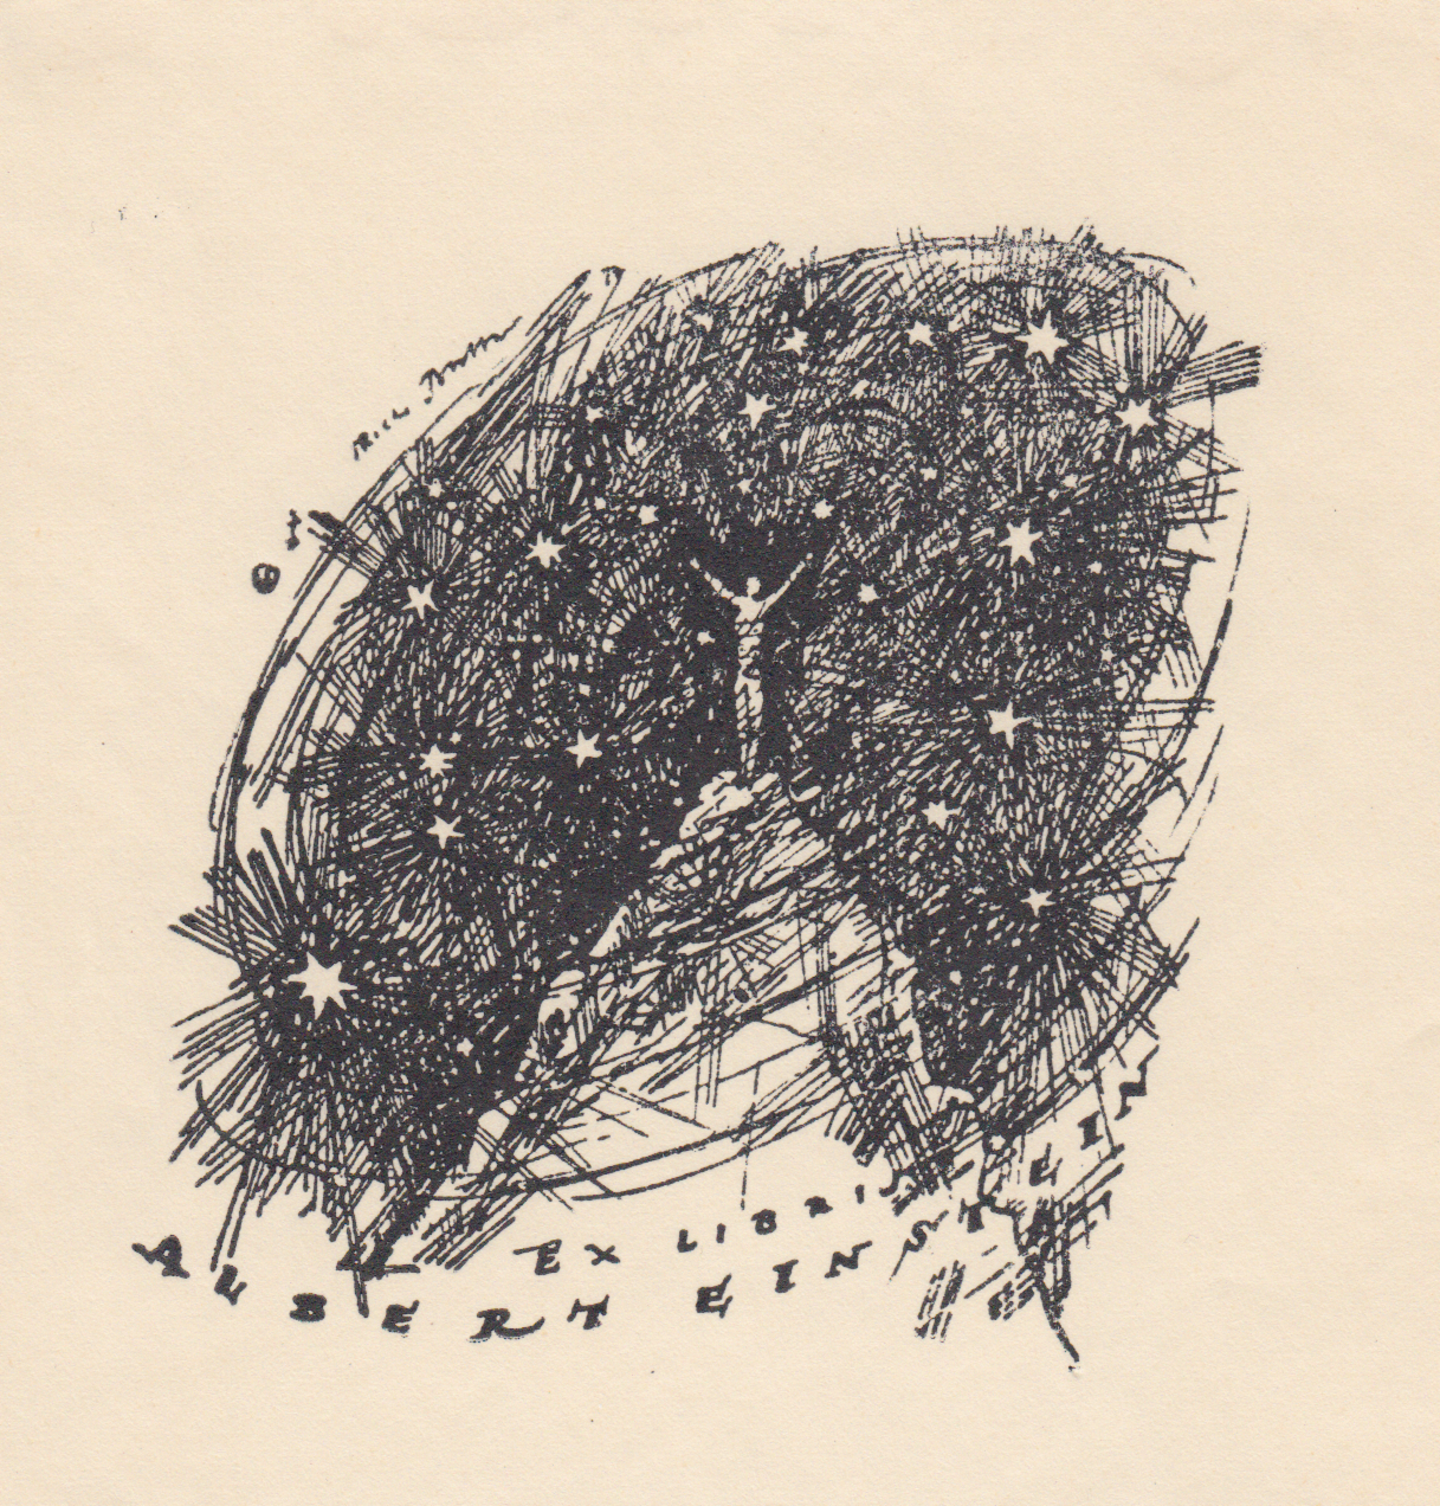 Schwarz-Weiß-Druck: Ein Mensch steht mit erhobenen Armen auf einem Berggipfel, umgeben vom Sternenhimmel. Beschriftung am unteren Rand der Abbildung: Ex Libris Albert Einstein